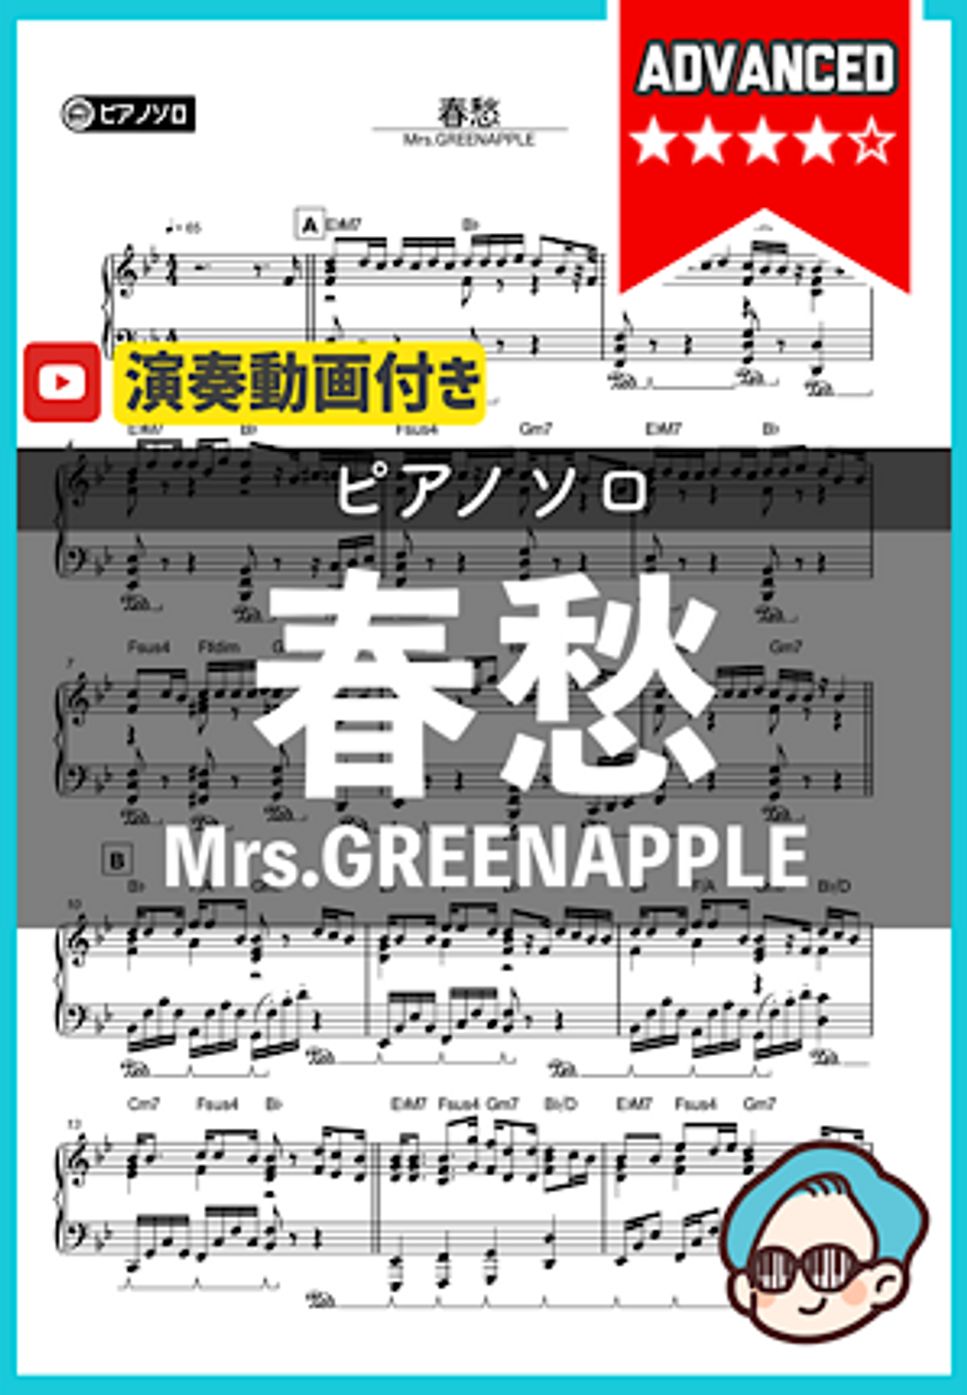 Mrs.GREENAPPLE - 春愁 by シータピアノ